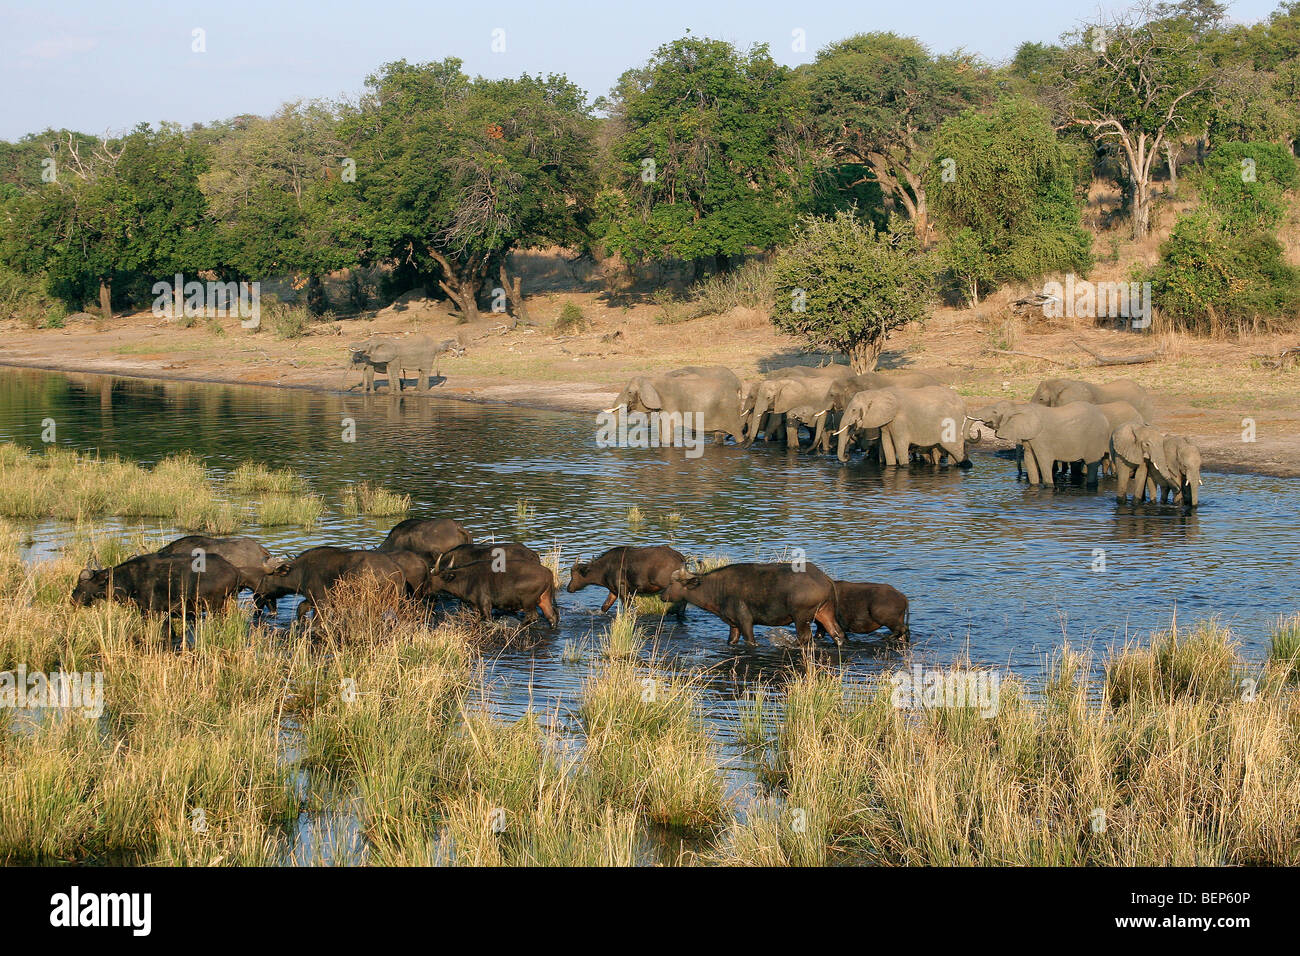 Les éléphants d'Afrique (Loxodonta africana) et le buffle (Syncerus caffer) boire dans la rivière, Chobe National Park, Botswana, Africa Banque D'Images